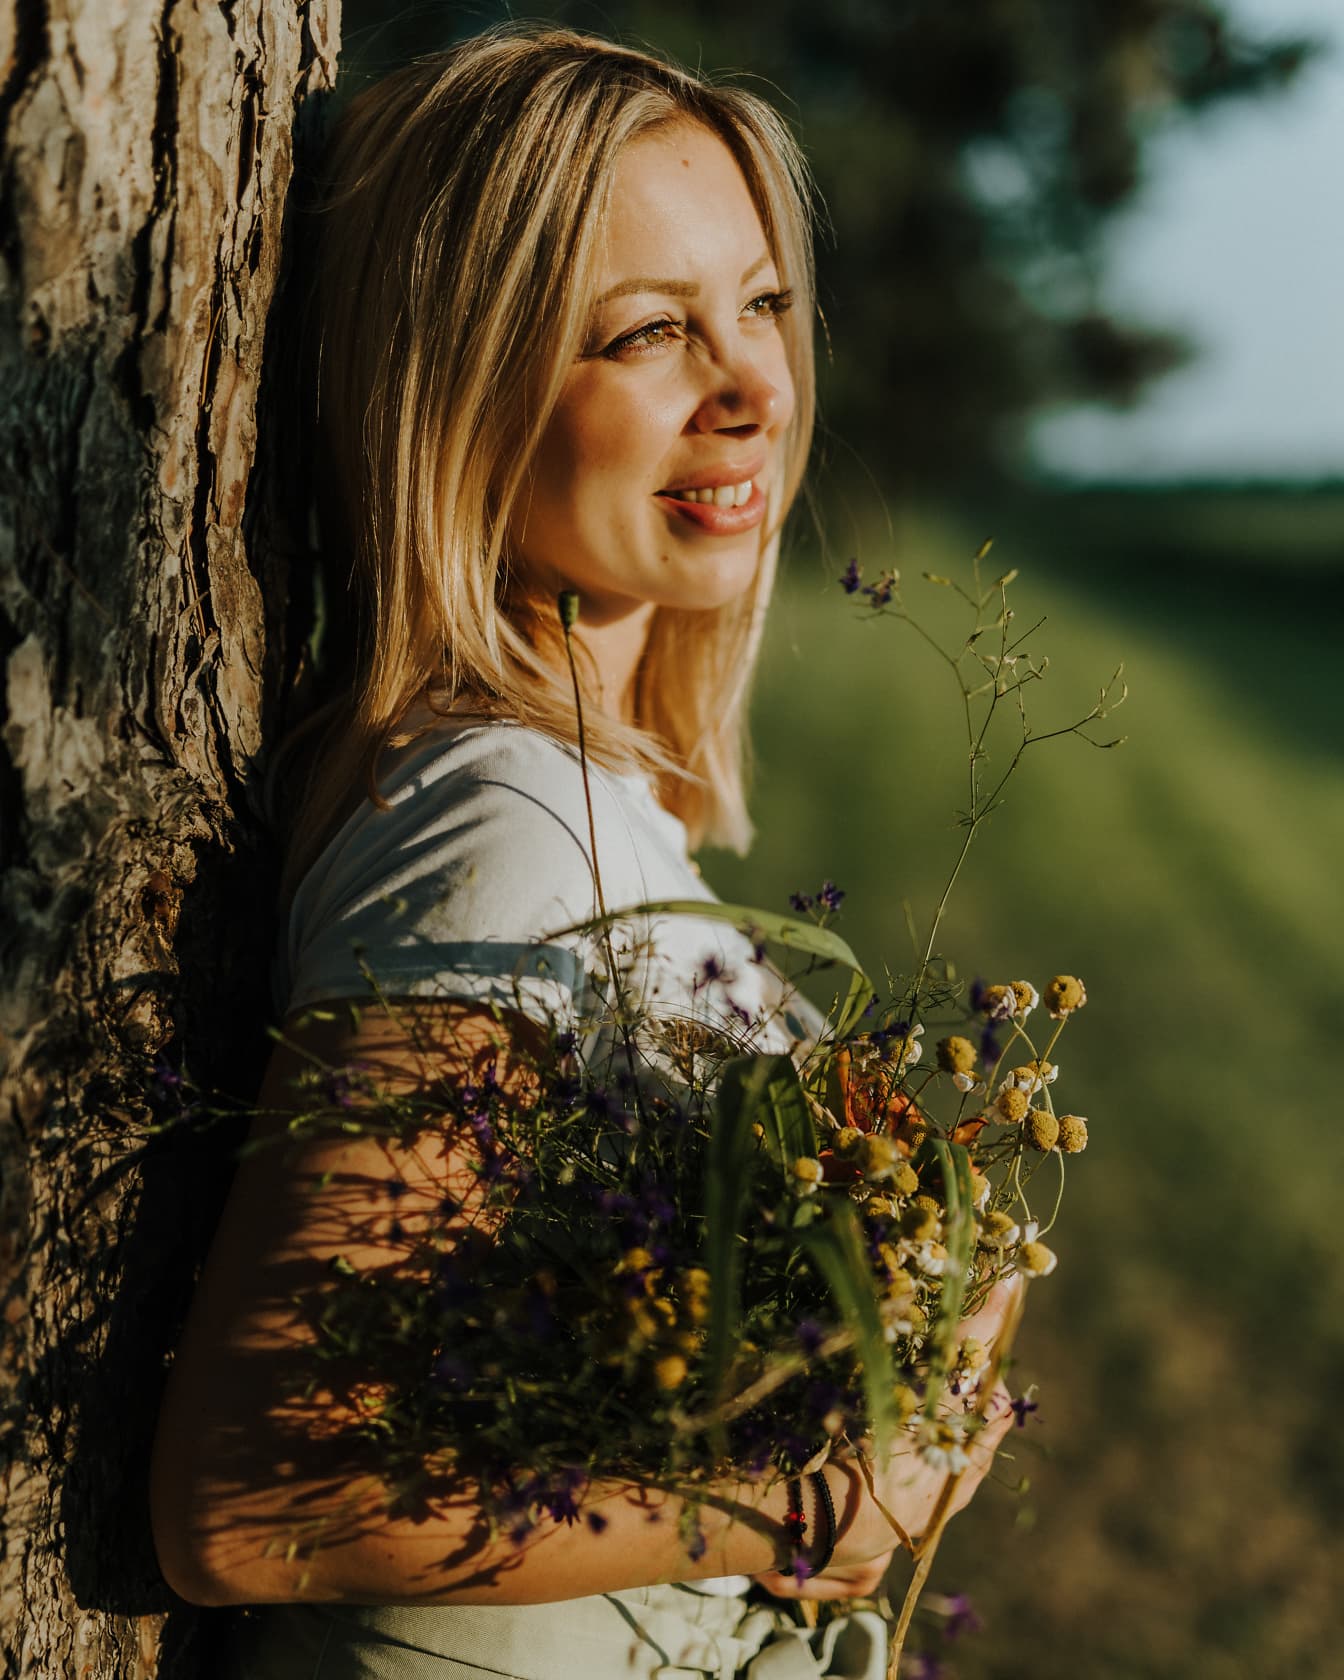 Вид сбоку портрет улыбающейся женщины, прислонившейся к дереву, держащей цветы